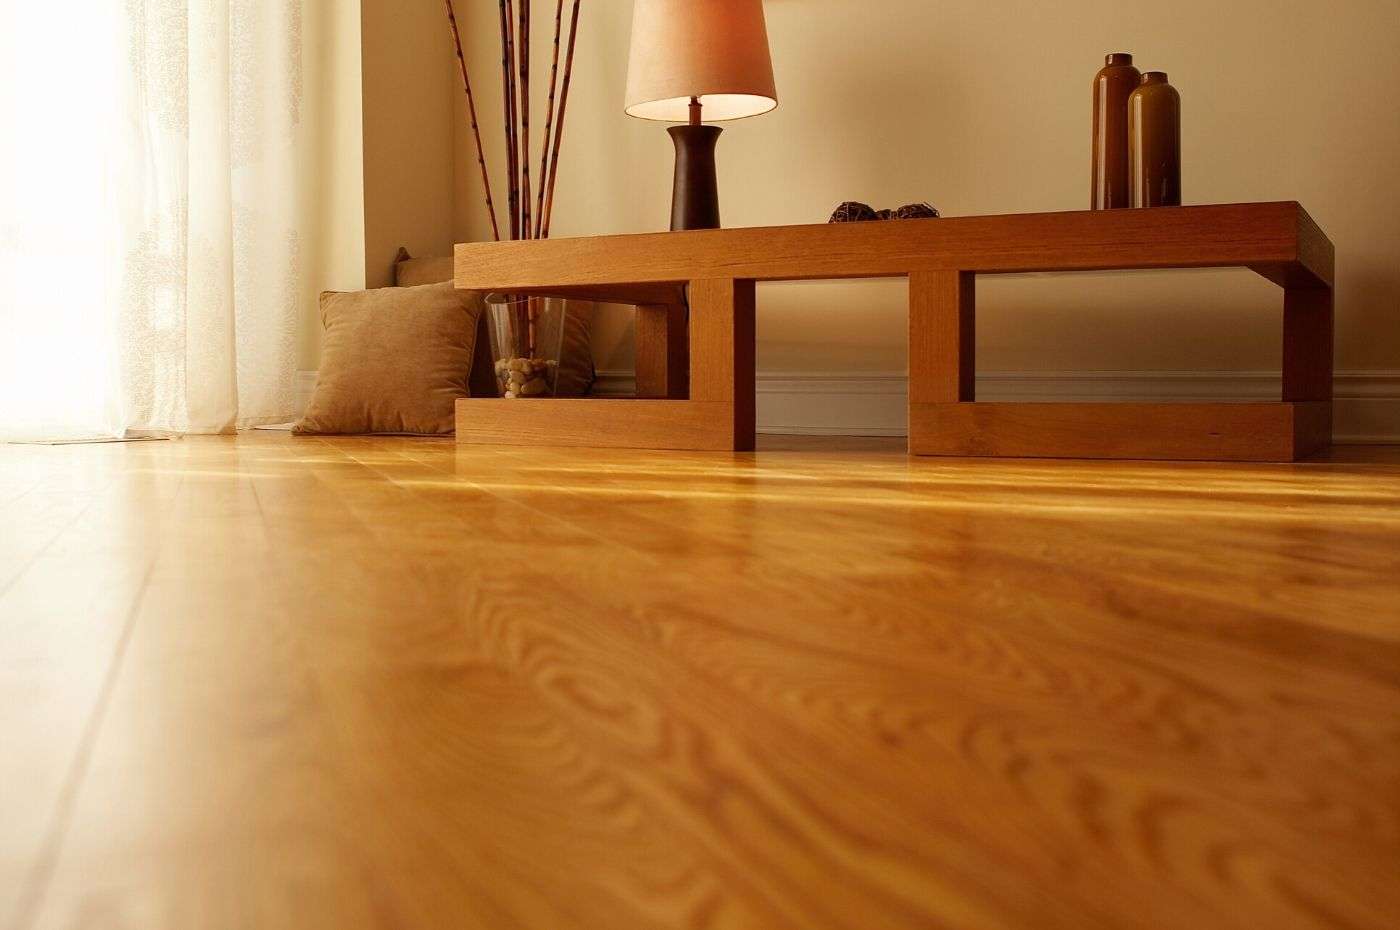 Gỗ cao su ép được sử dụng làm ván sàn cho sàn nhà